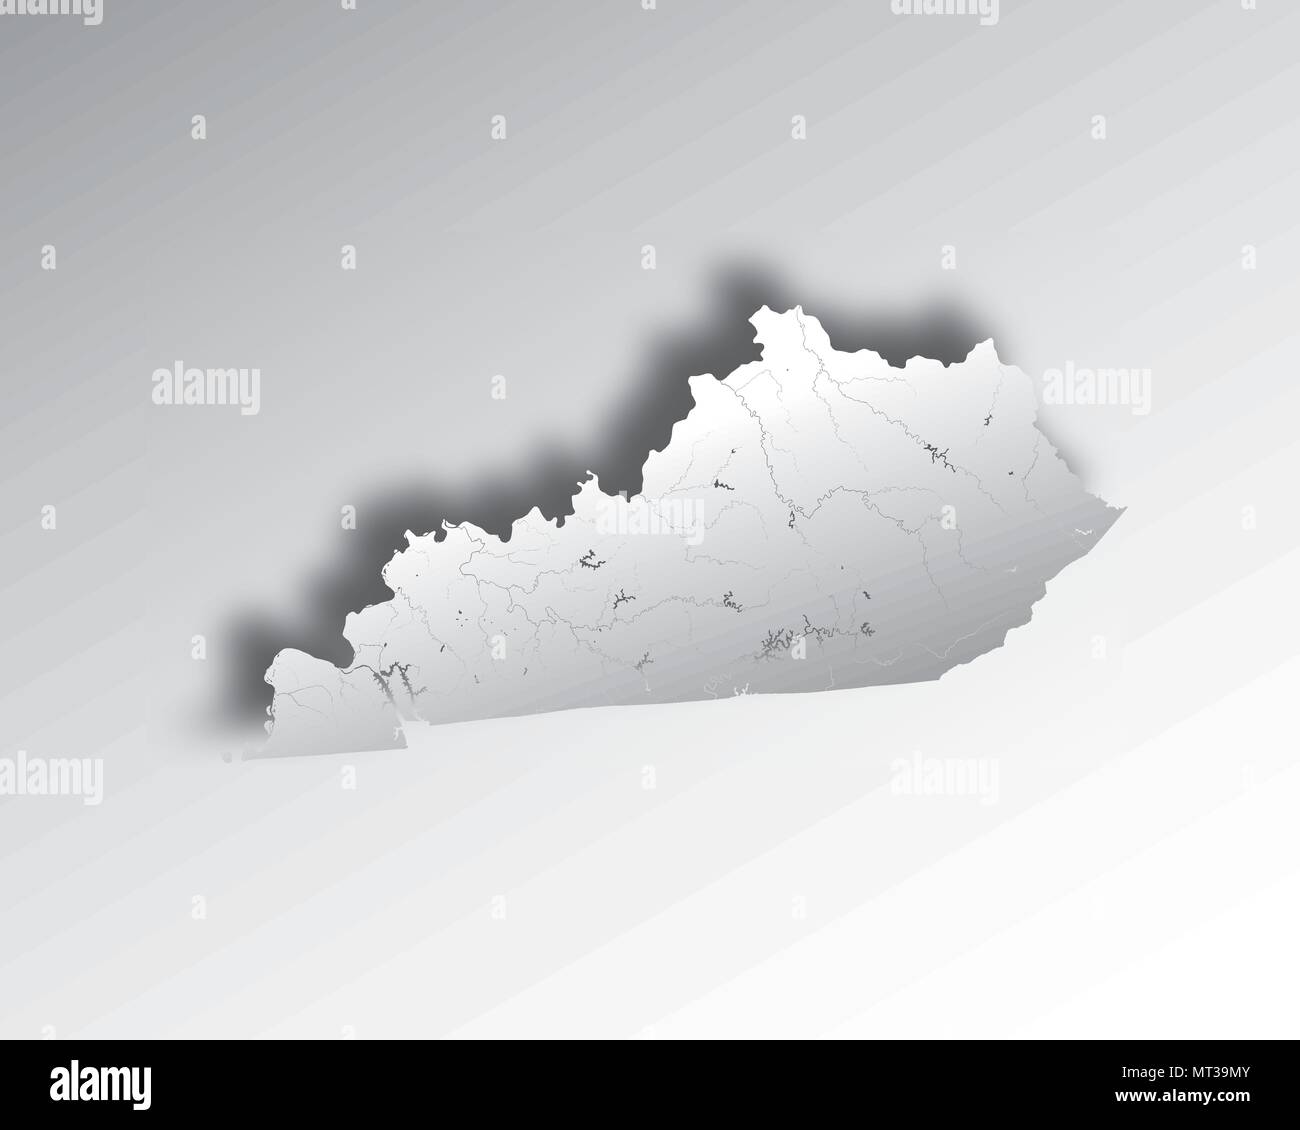 Stati Uniti - Mappa del Kentucky con carta effetto di taglio. Fatto a mano. I fiumi e i laghi sono mostrati. Si prega di guardare le mie altre immagini della serie cartografica - TH Illustrazione Vettoriale